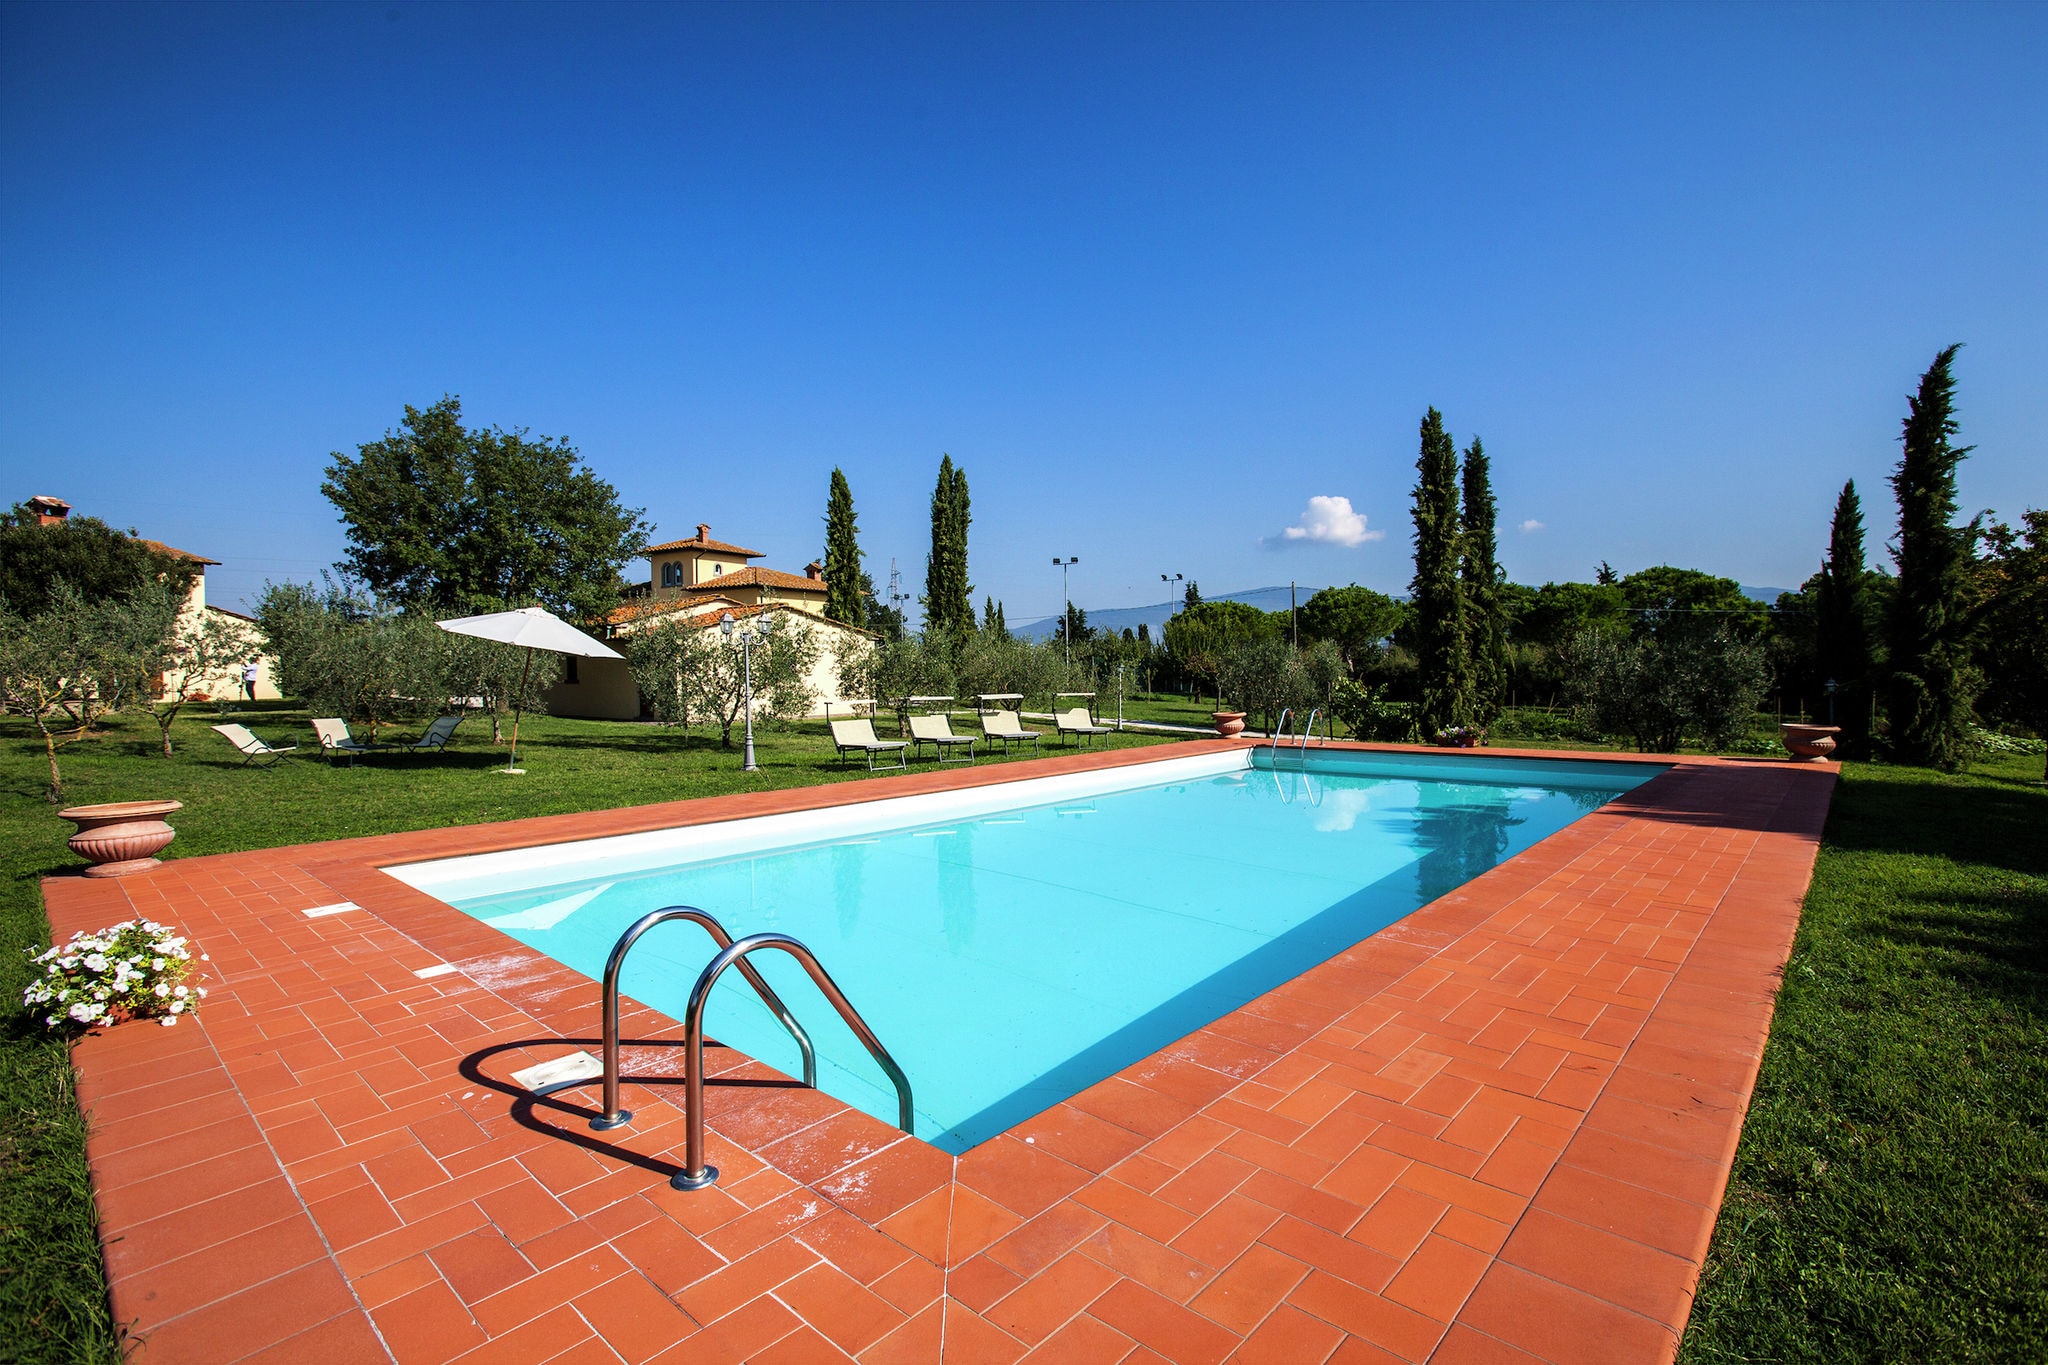 Villa met ruime tuin, privézwembad, bubbelbad en tennisbaan dichtbij Cortona